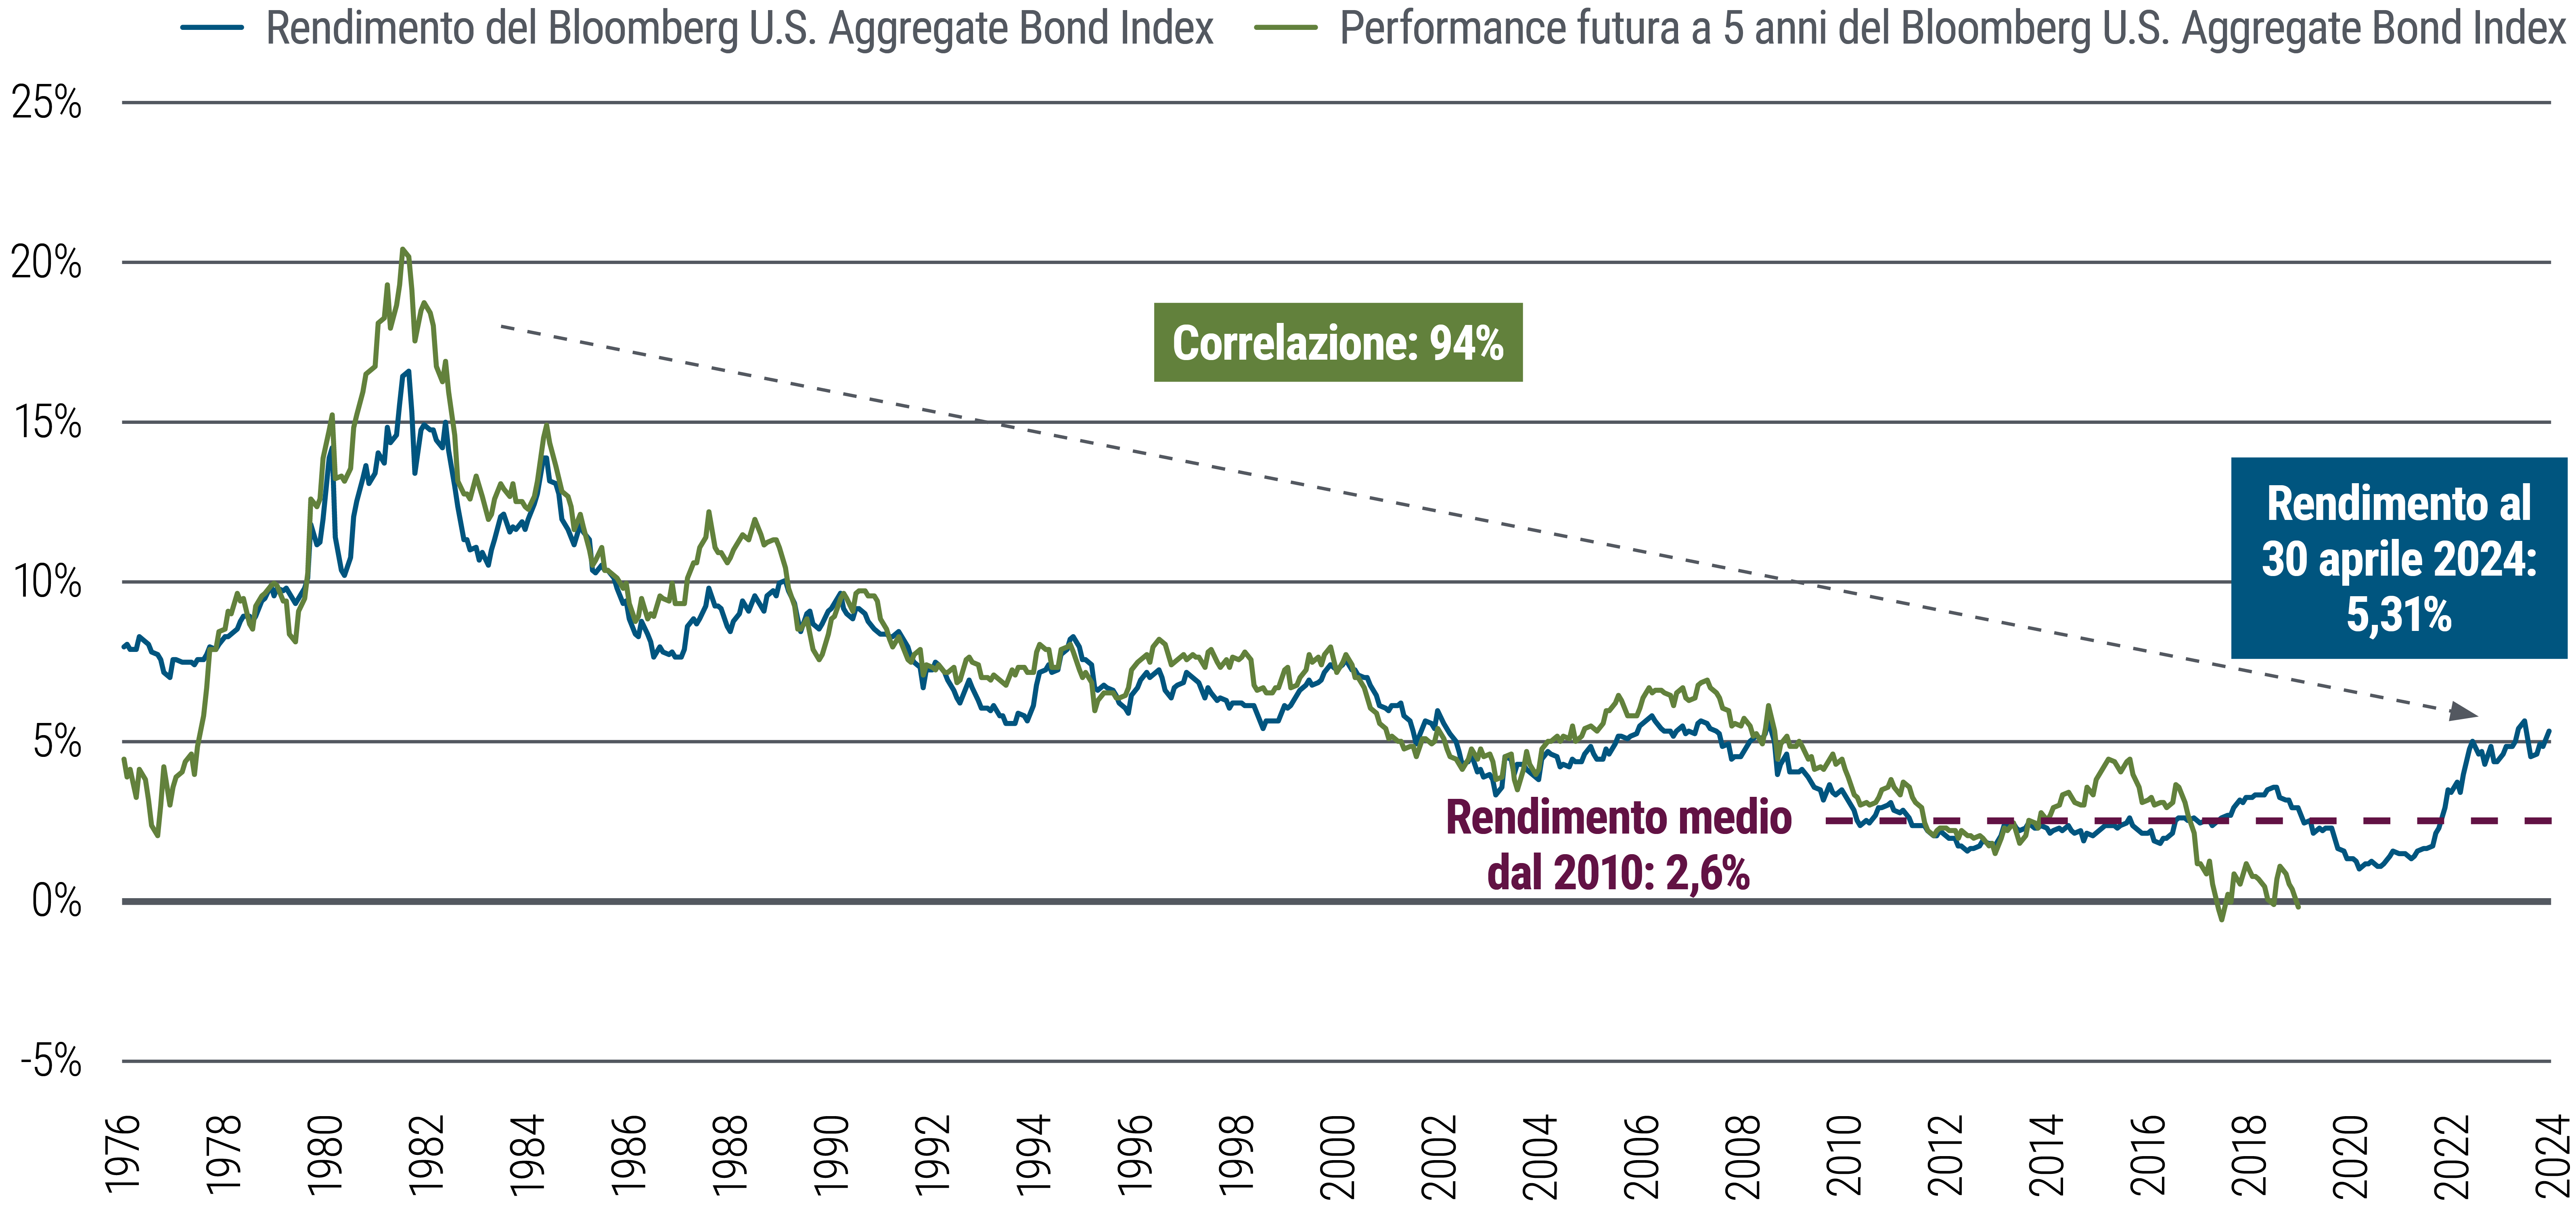 La Figura 2 è un grafico lineare che mostra i rendimenti e la successiva performance a 5 anni dell’indice Bloomberg U.S. Aggregate Bond da gennaio 1976 ad aprile 2024. In questo orizzonte temporale, i rendimenti di partenza sono stati fortemente correlati (94%) alla performance futura a 5 anni. Il rendimento medio dal 2010 è pari a 2,6%, ma dal 2021 i rendimenti sono in salita e al 30 aprile 2024 si attestavano al 5,31%. Fonte: Bloomberg, PIMCO.